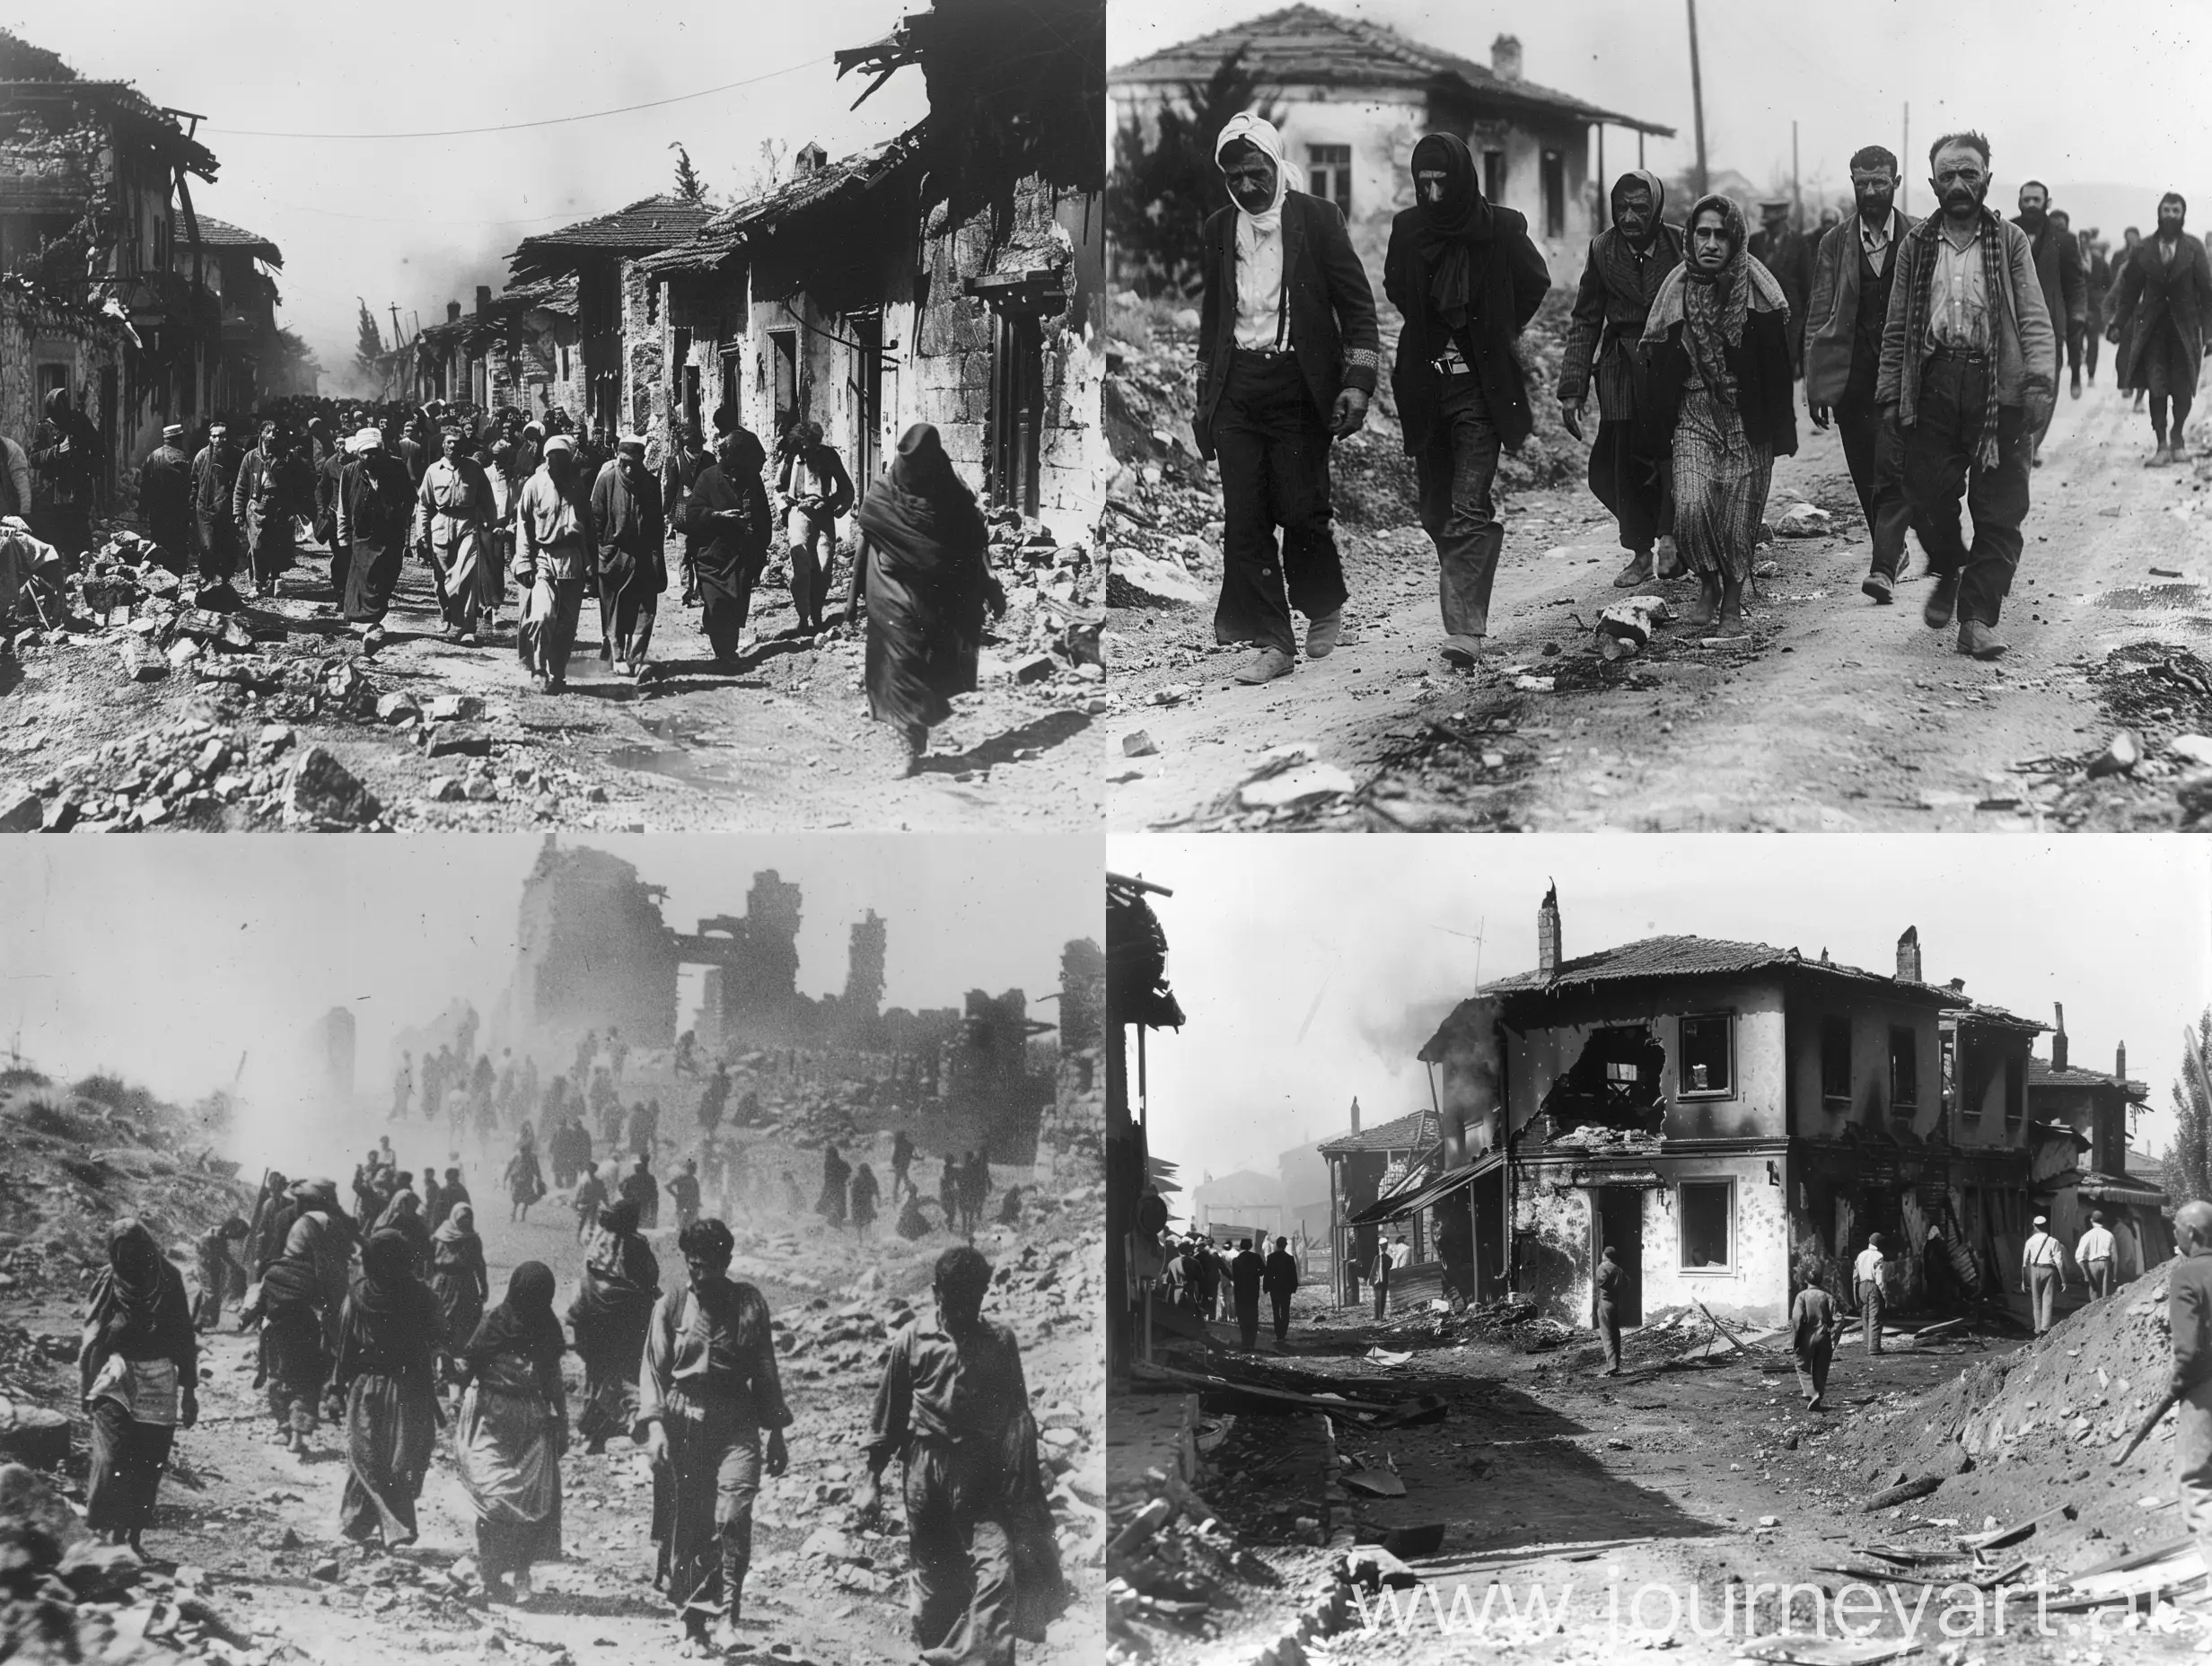 Yalova-Peninsula-Massacres-Devastation-and-Resilience